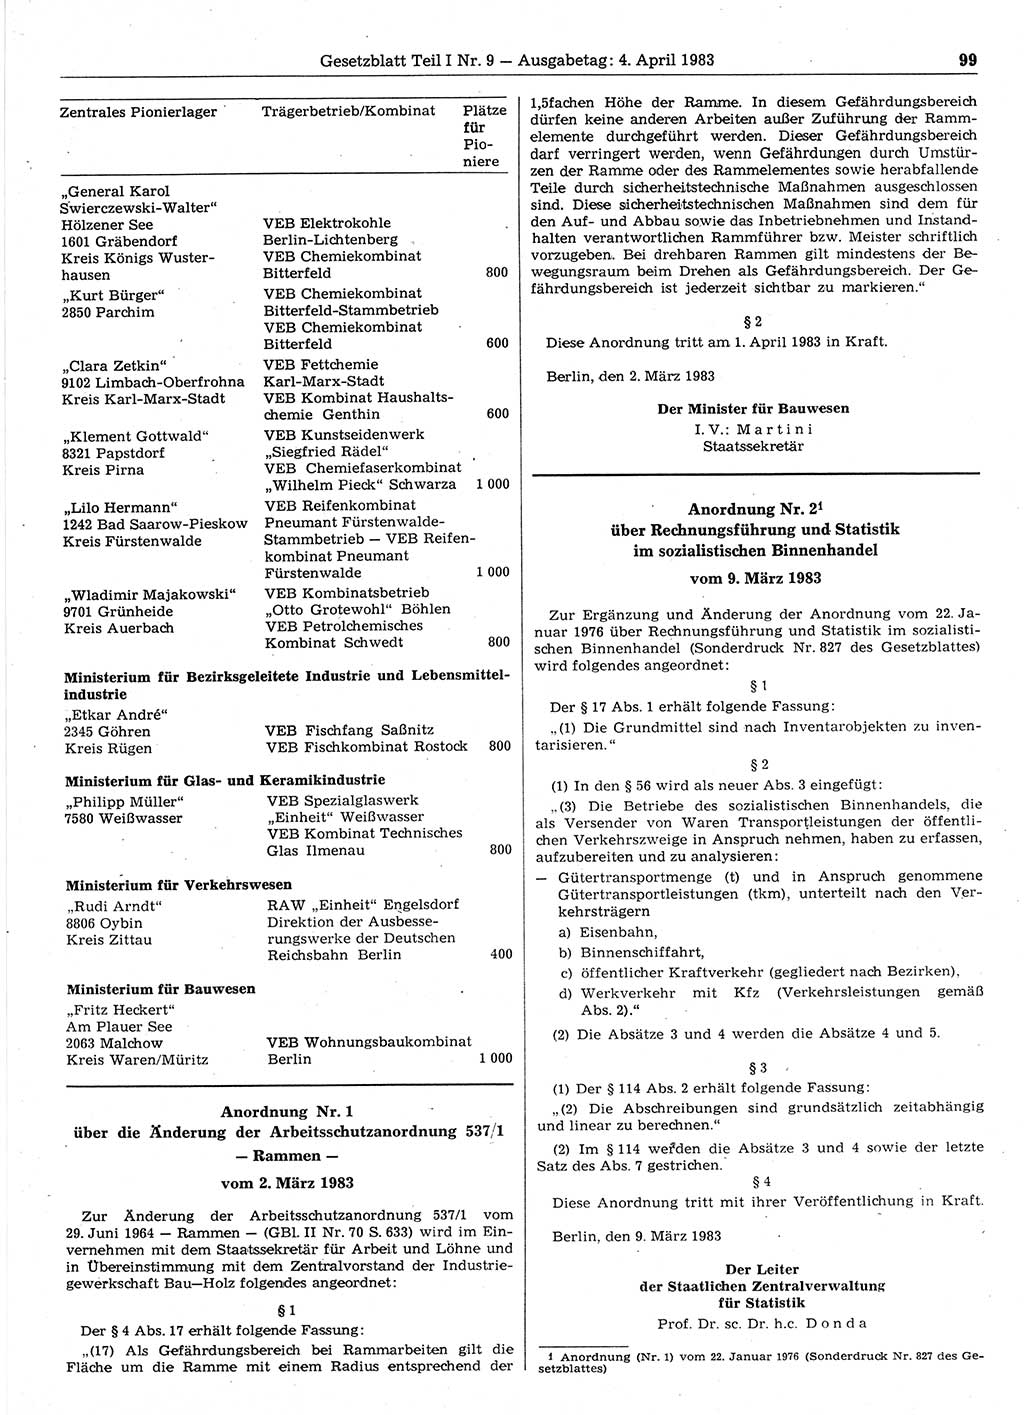 Gesetzblatt (GBl.) der Deutschen Demokratischen Republik (DDR) Teil Ⅰ 1983, Seite 99 (GBl. DDR Ⅰ 1983, S. 99)